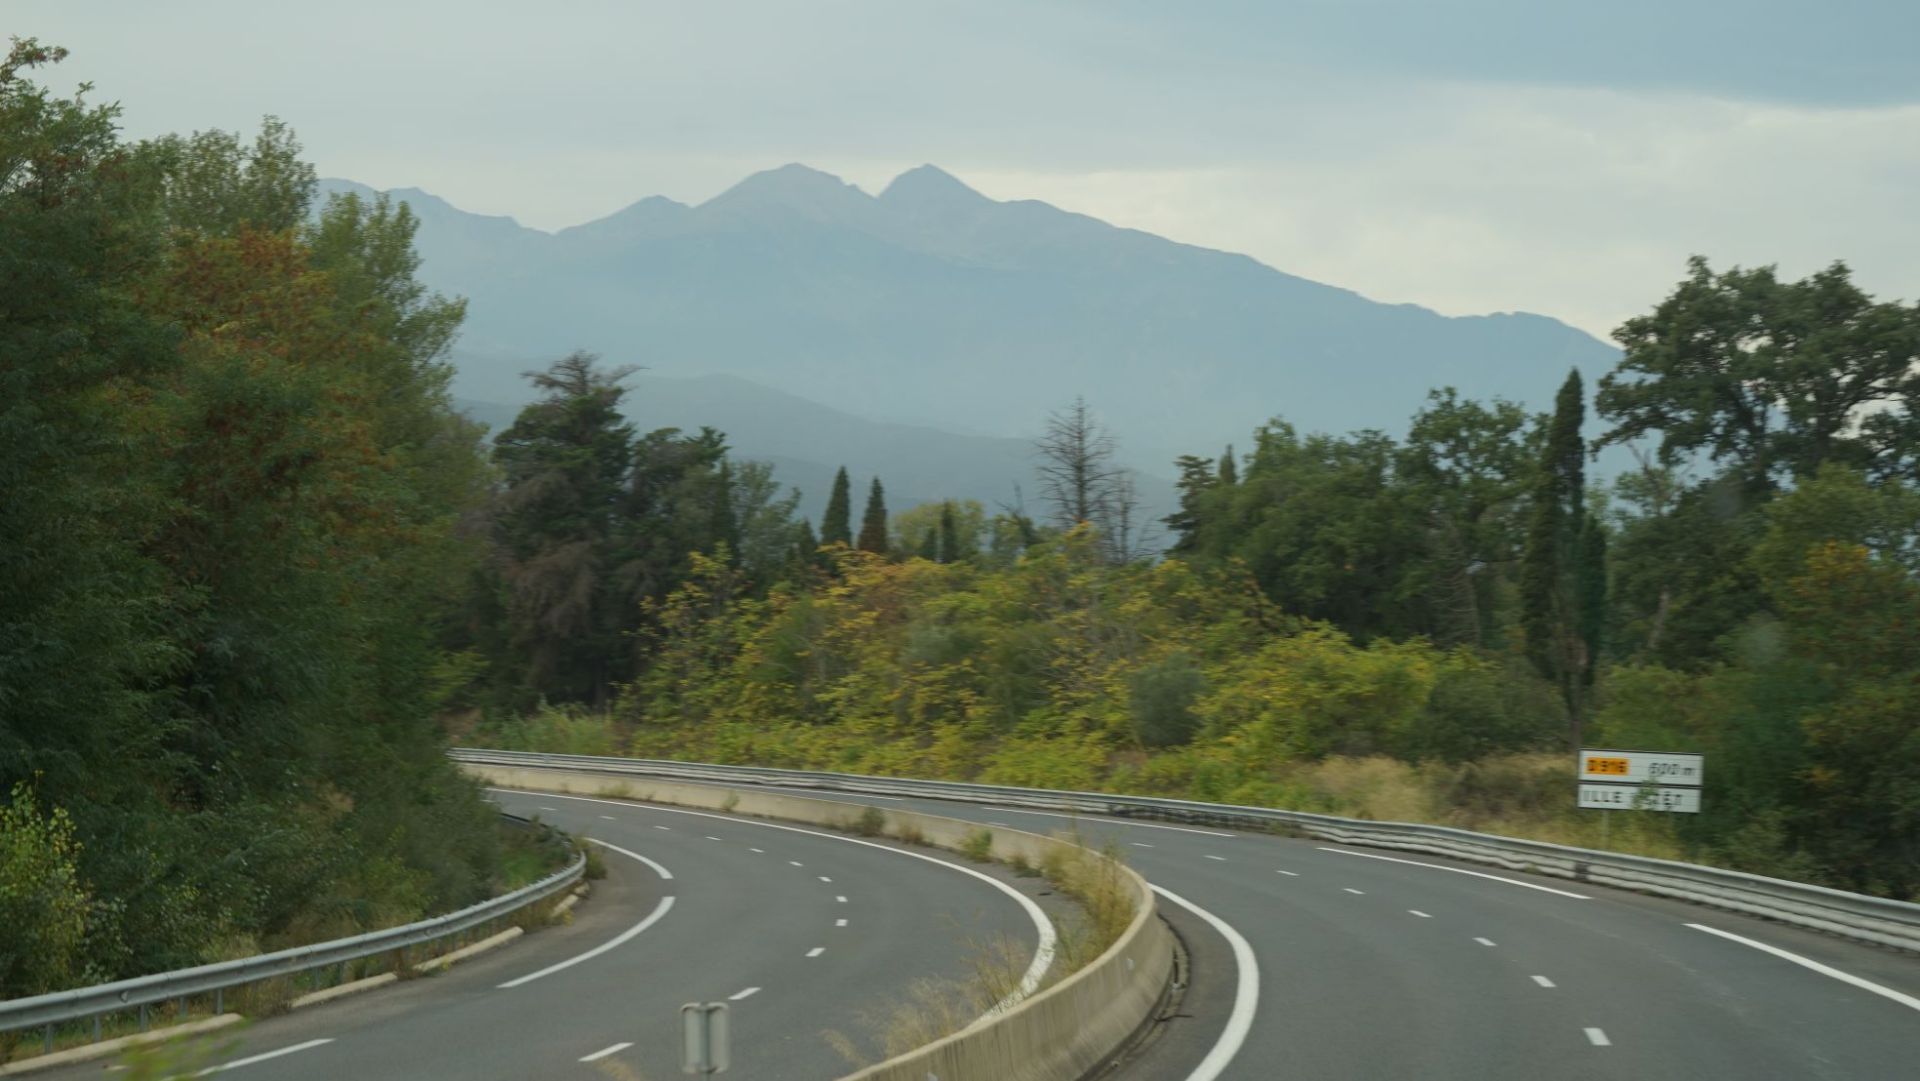 从法国尼姆到安道尔，须穿过西班牙比利牛斯山脉，海拔约1500米左右，此时己呈现深秋景色，树叶金黄，寒